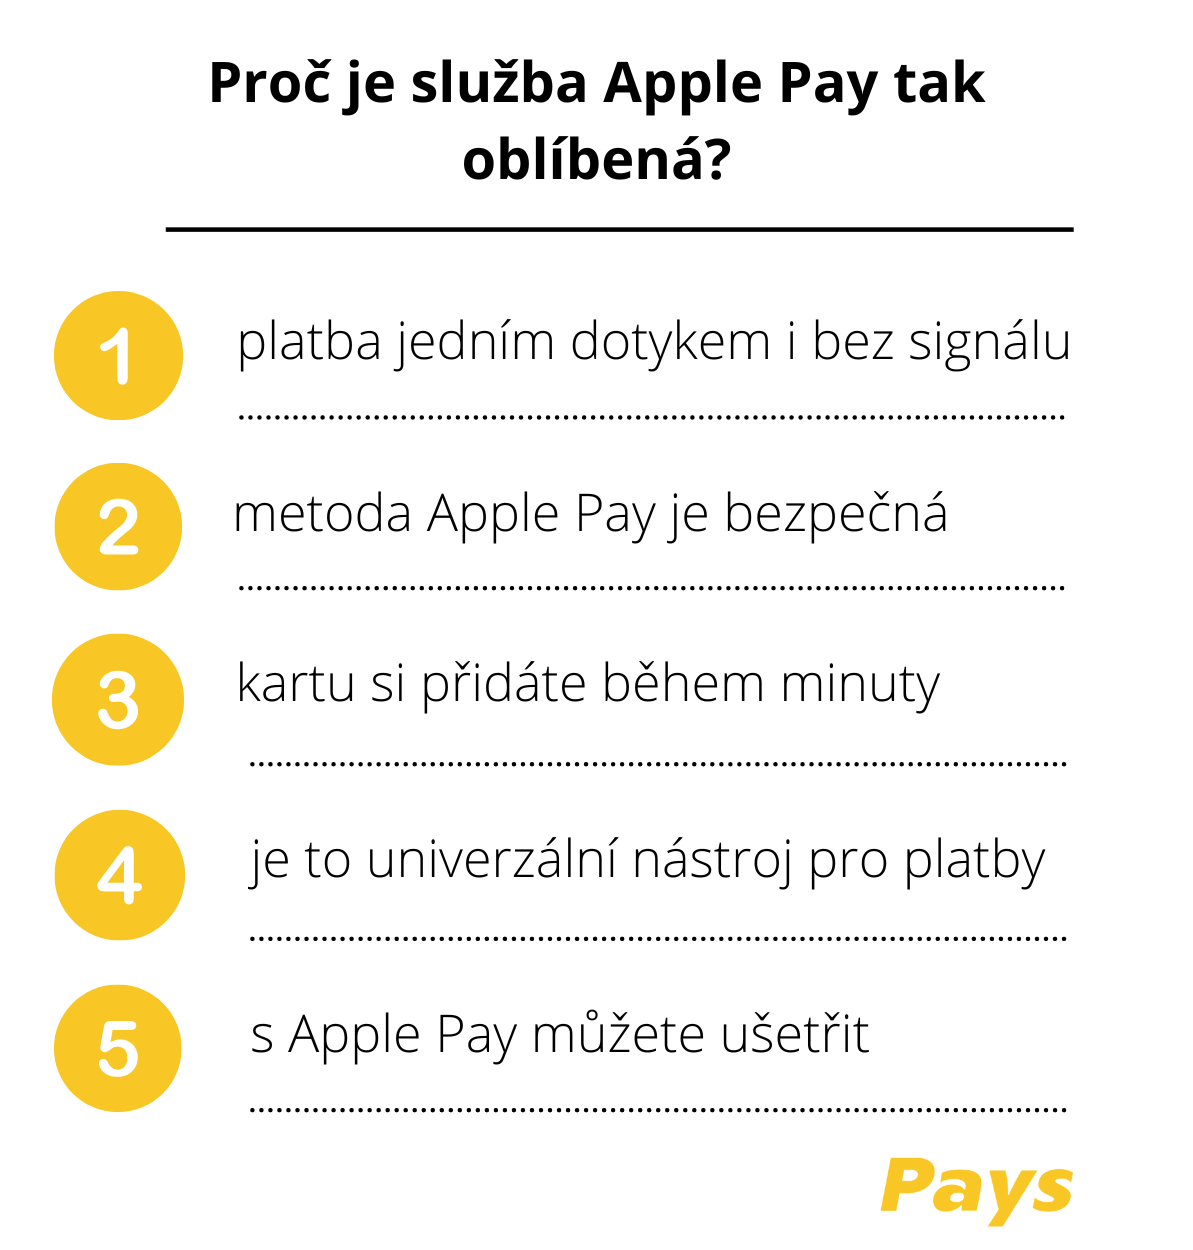 Obrázek shrnuje hlavní důvody, proč je Apple Pay tak oblíbená, jak je uvedeno v článku – že lze platit jedním dotykem i bez signálu, služba je bezpečná, kartu si jednoduše přidáte do zařízení během jedné minuty a Apple Pay je navíc univerzální platební nástroj, díky kterému můžete i ušetřit.